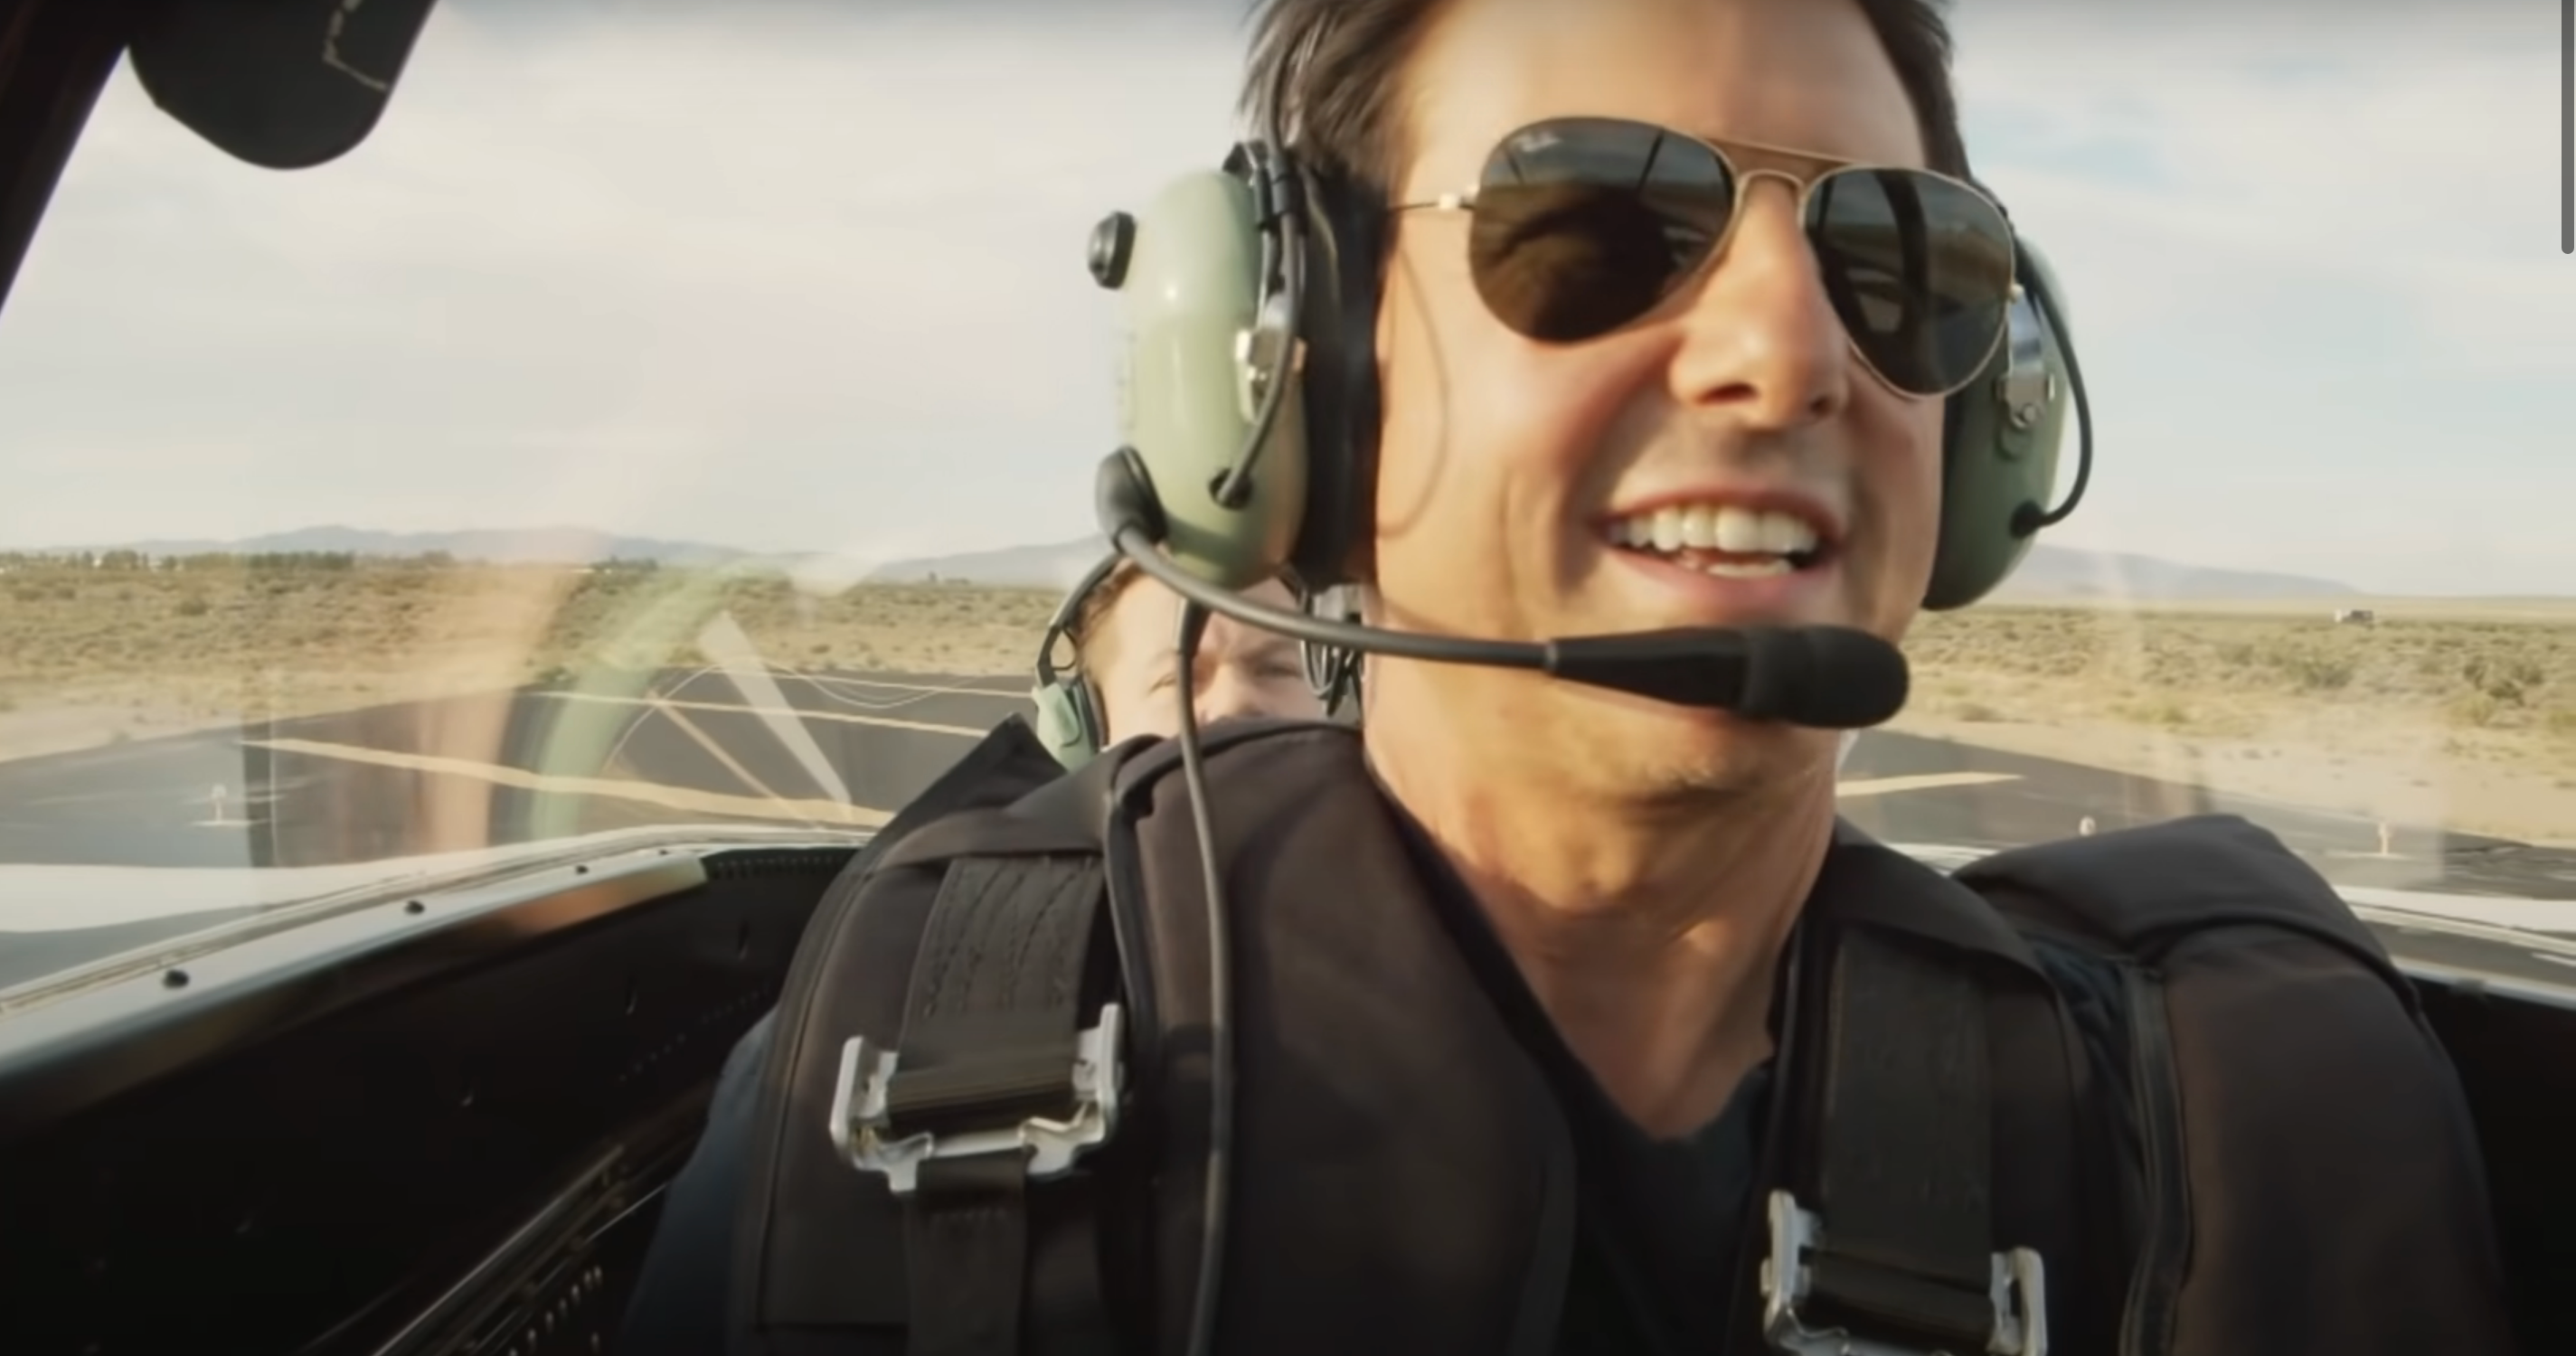 Piloteando un avión en vuelo, Tom Cruise le envía un saludo al Rey Carlos III